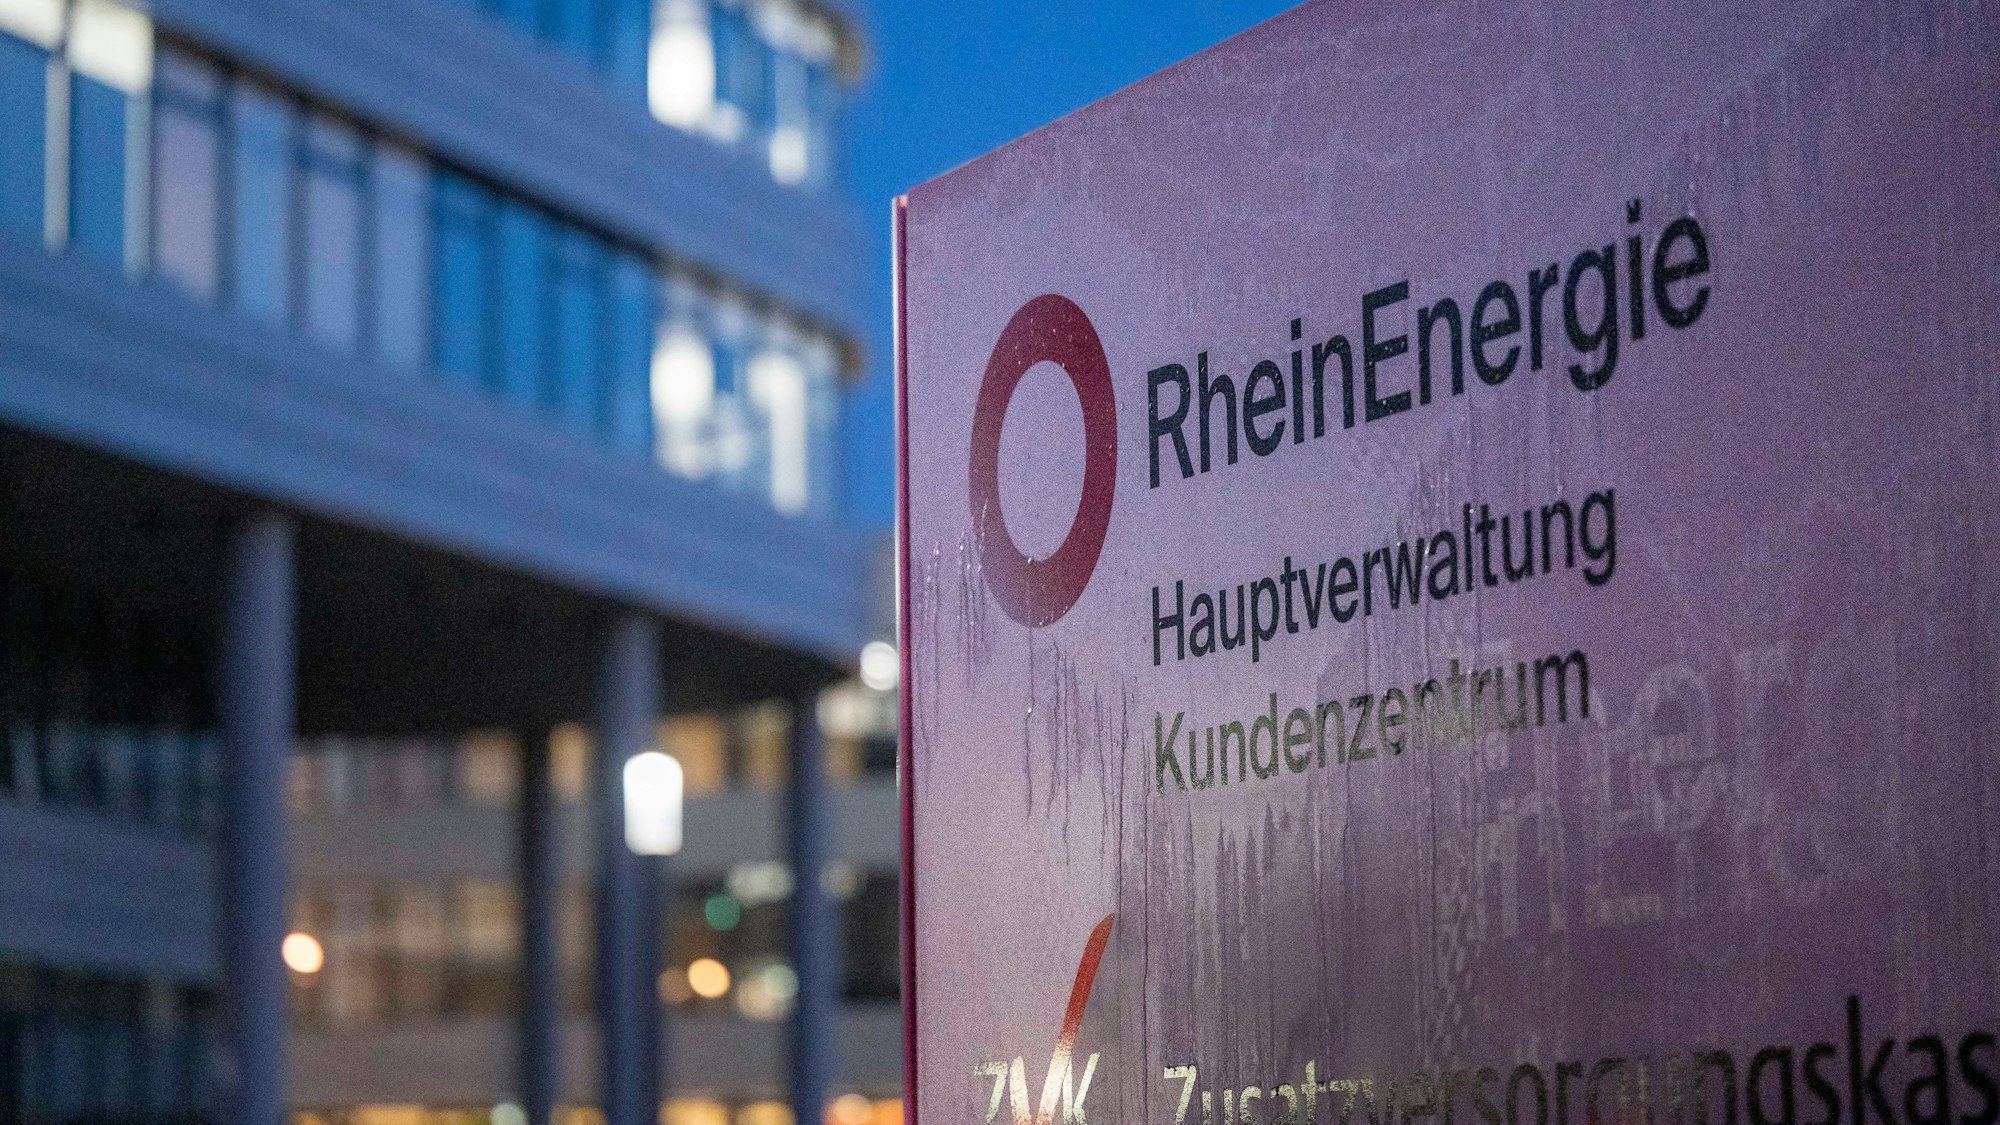 15.12.2022, Köln: Die Zentrale der Rhein Energie AG am Parkgürtel am Abend. Als Energieversorgung steht das Unternehmen aufgrund der hohen Energiepreise im Fokus.Foto: Uwe Weiser